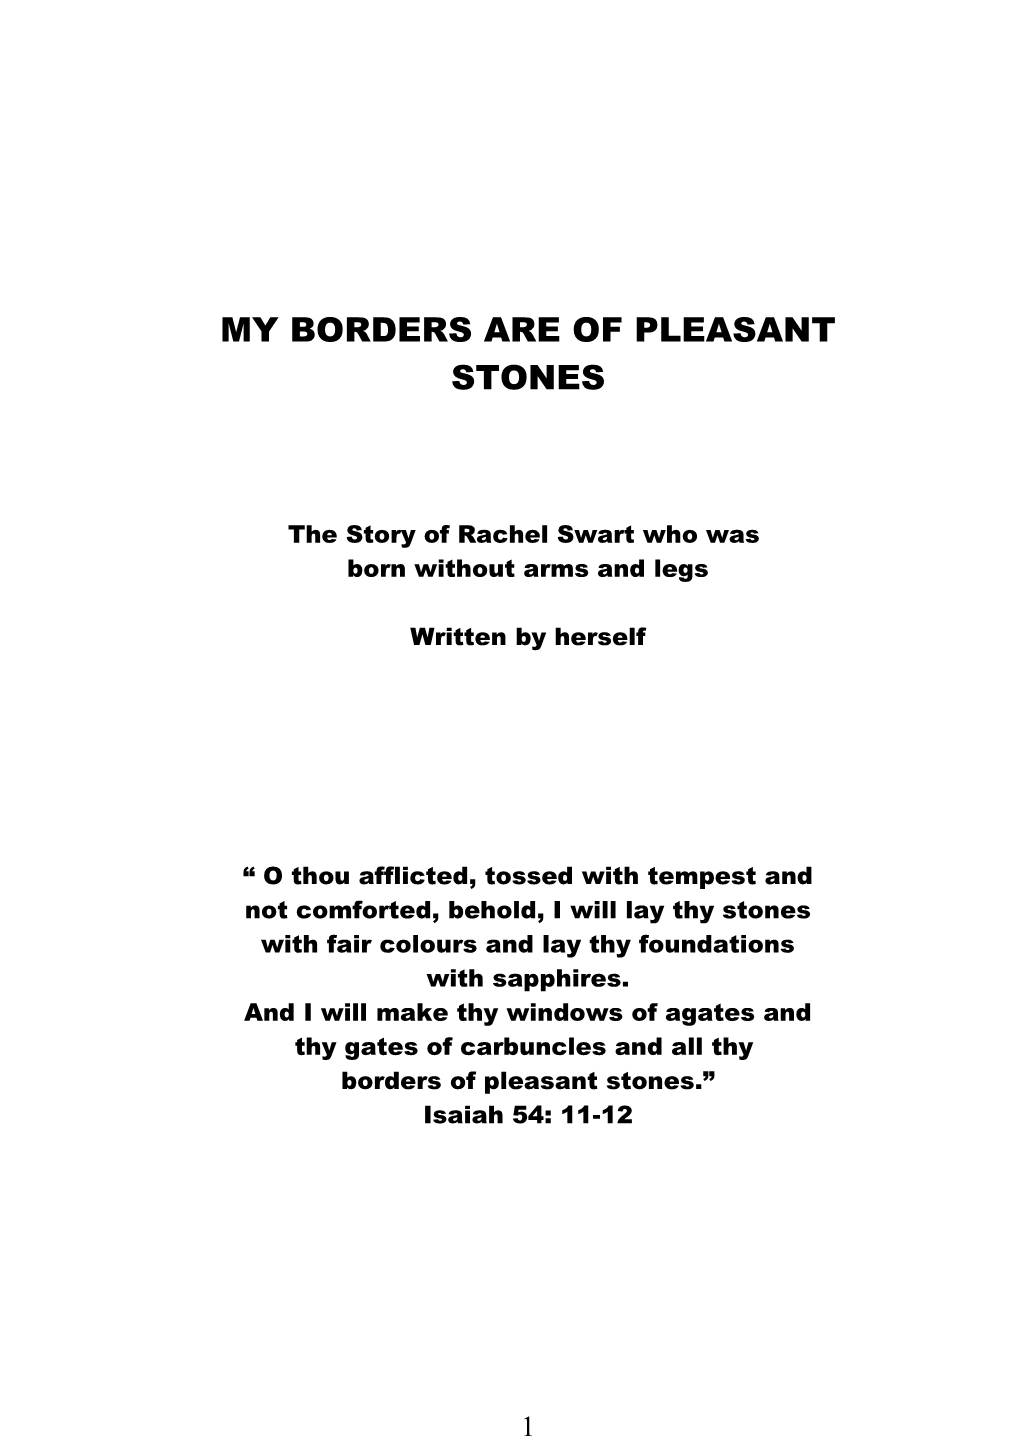 My Borders Are of Pleasant Stones